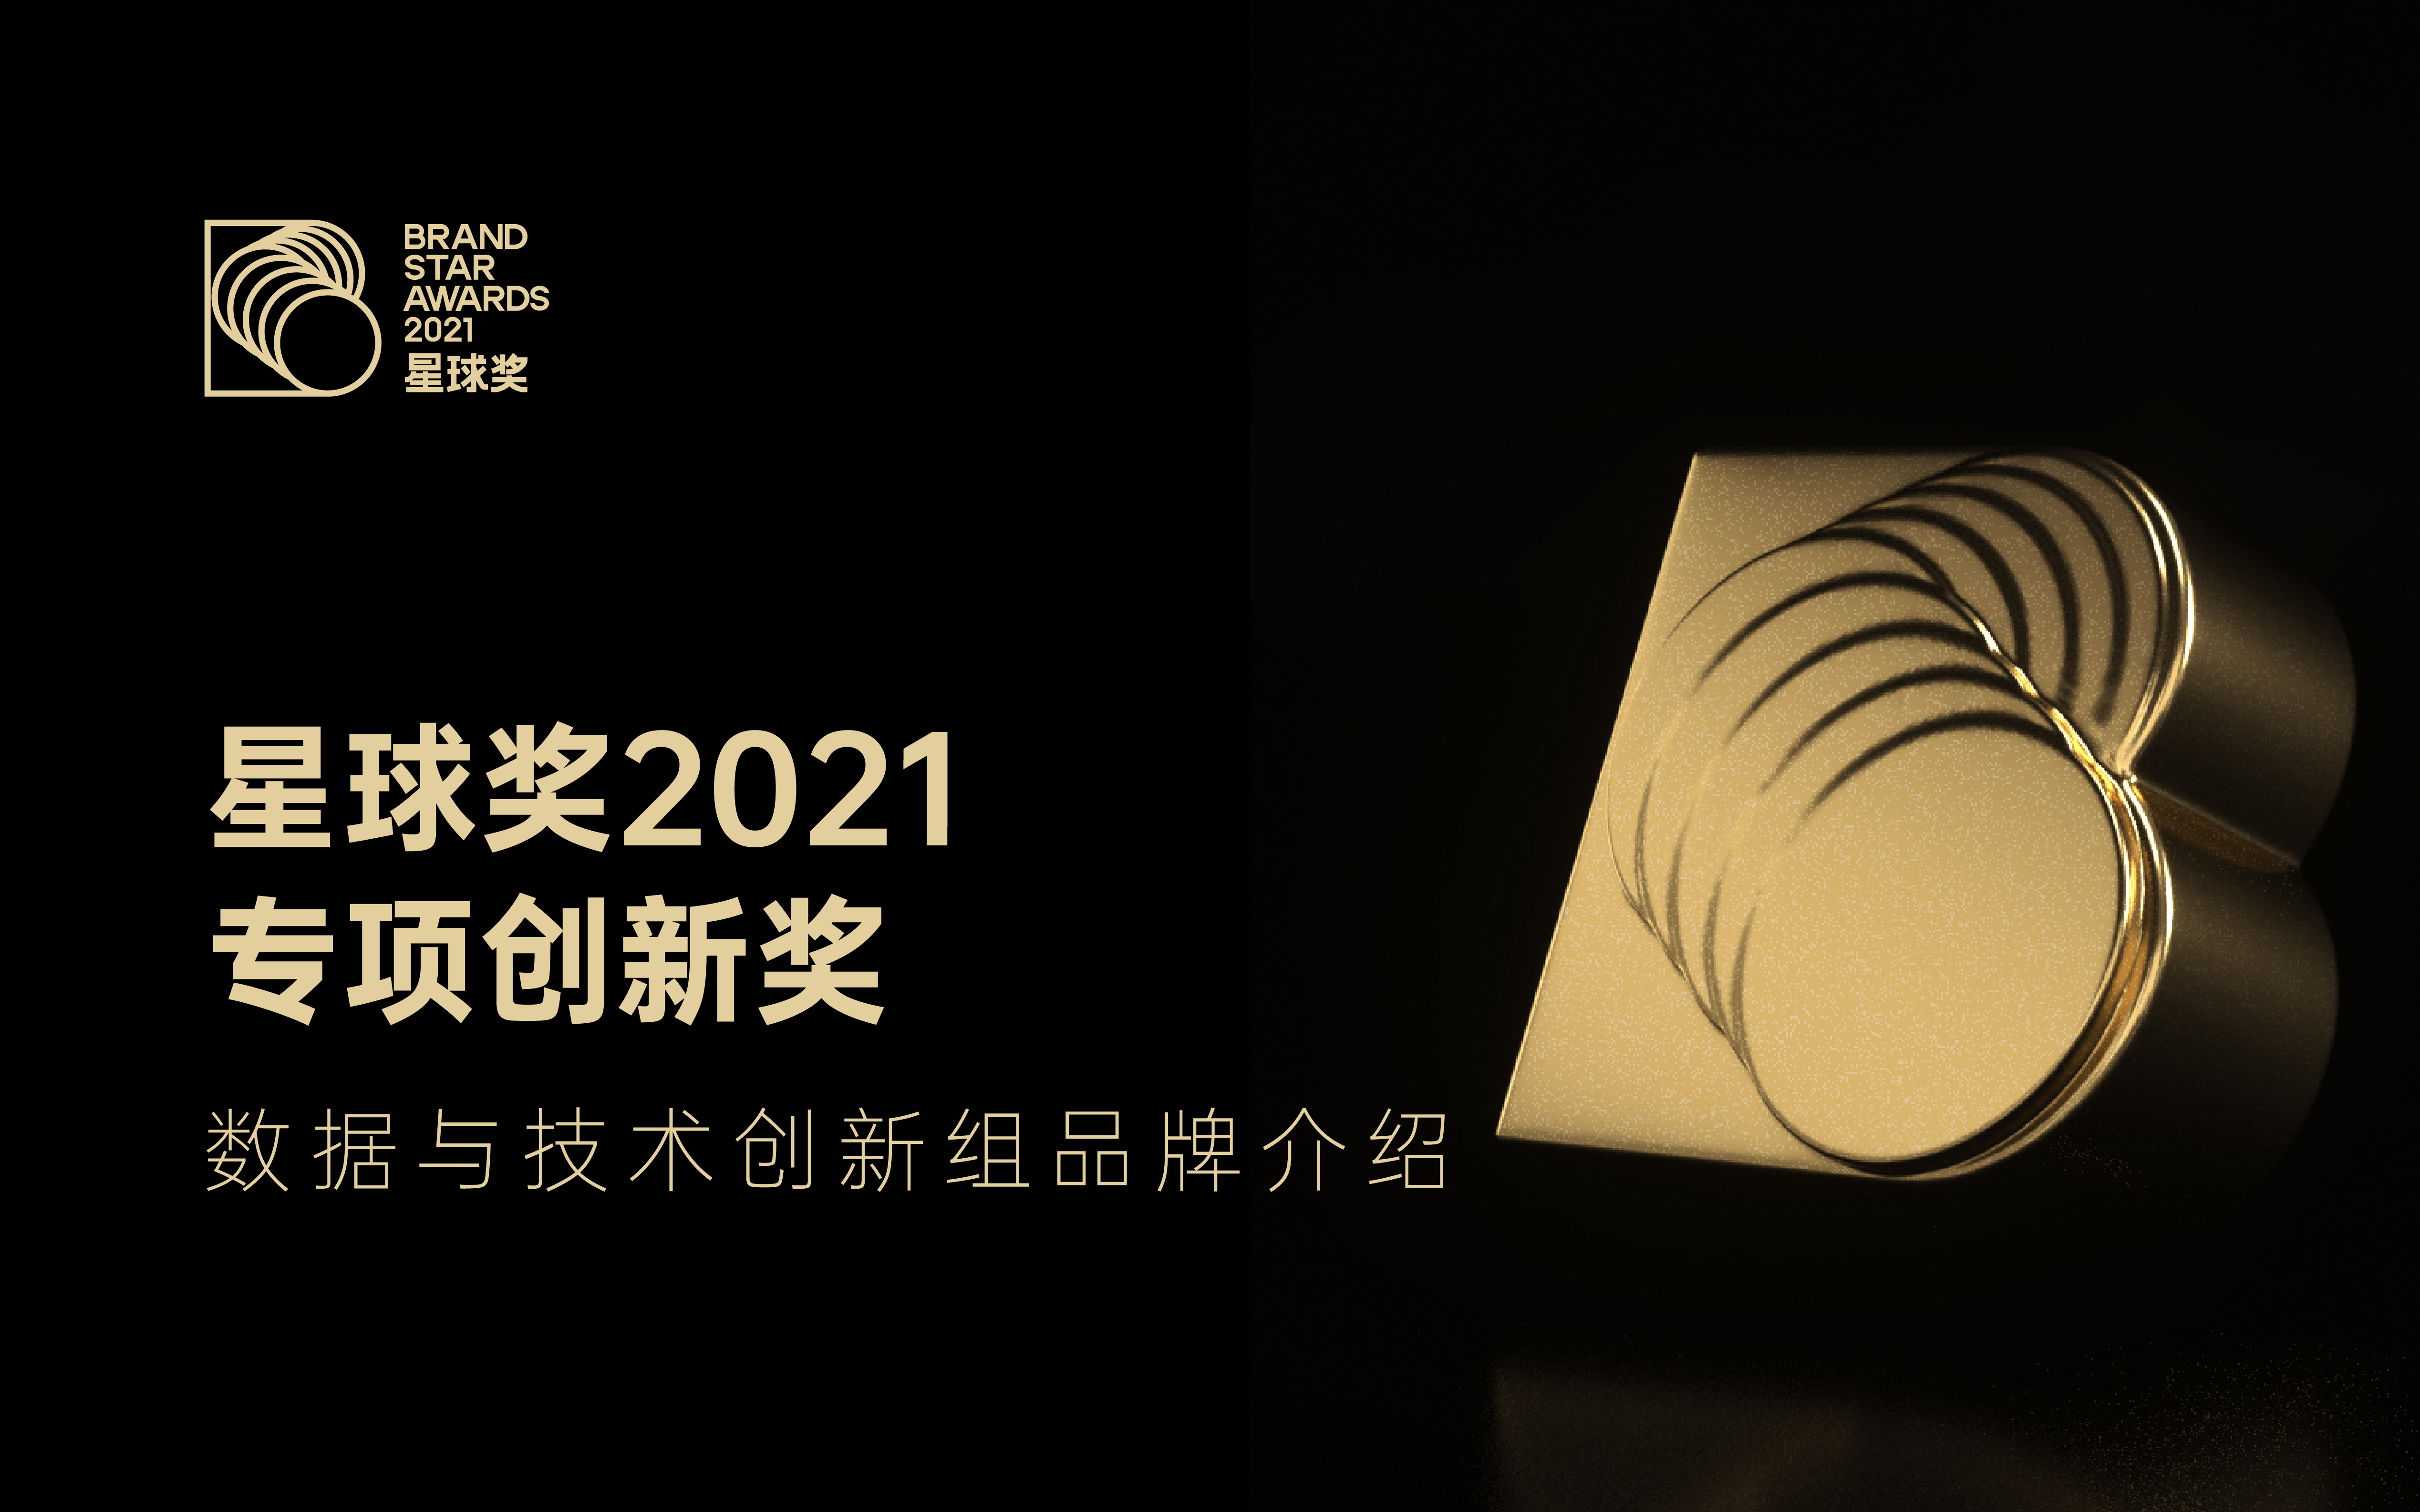 「数据与技术创新组」获奖品牌介绍｜星球奖2021